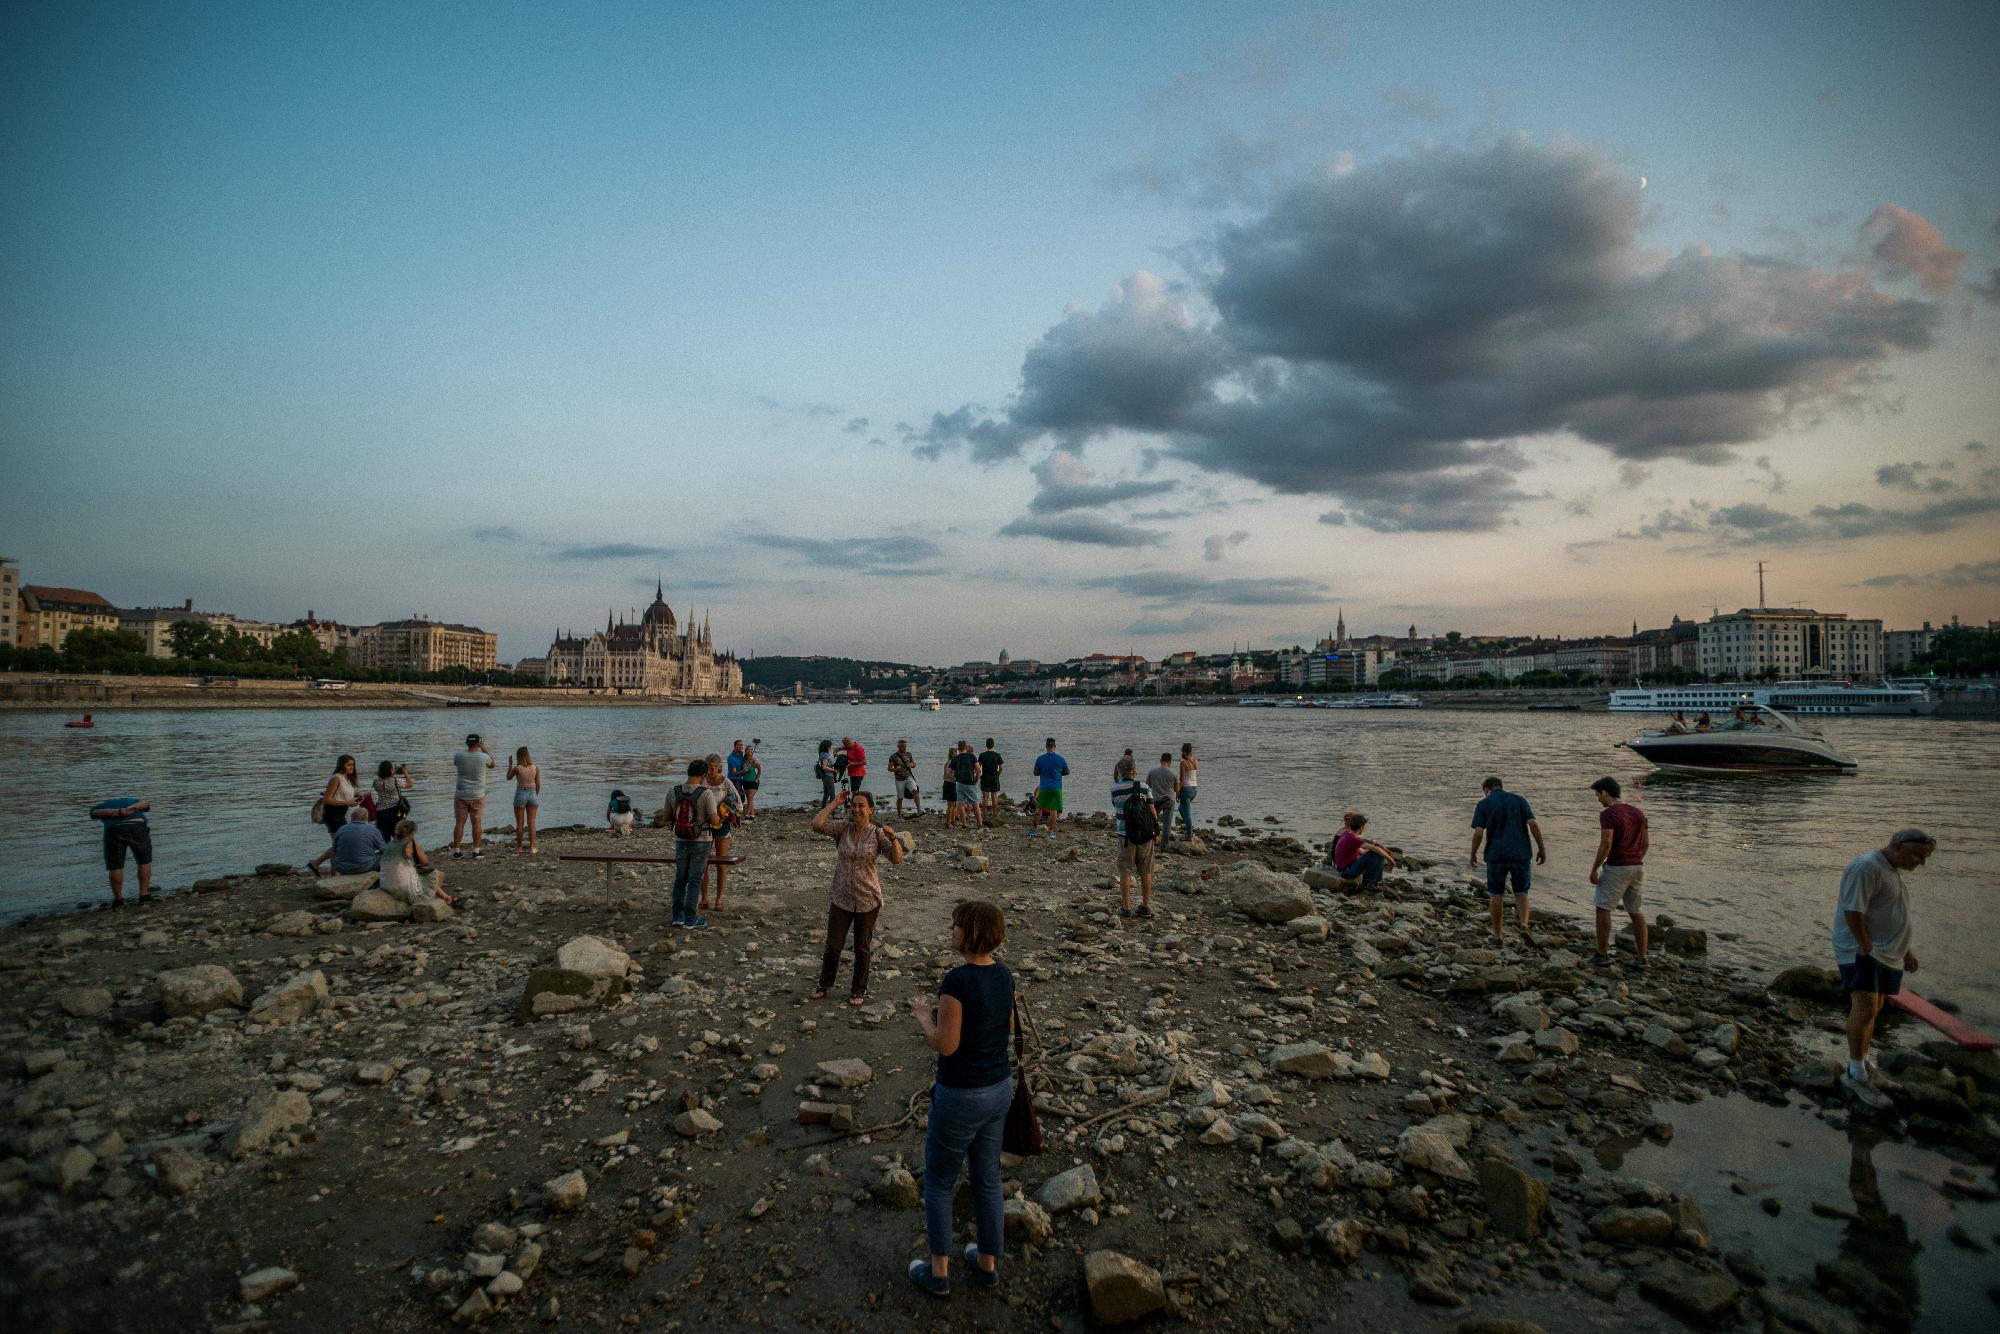 Tragikus a helyzet a Dunán, ez még a nemzetgazdaságnak is fájhat